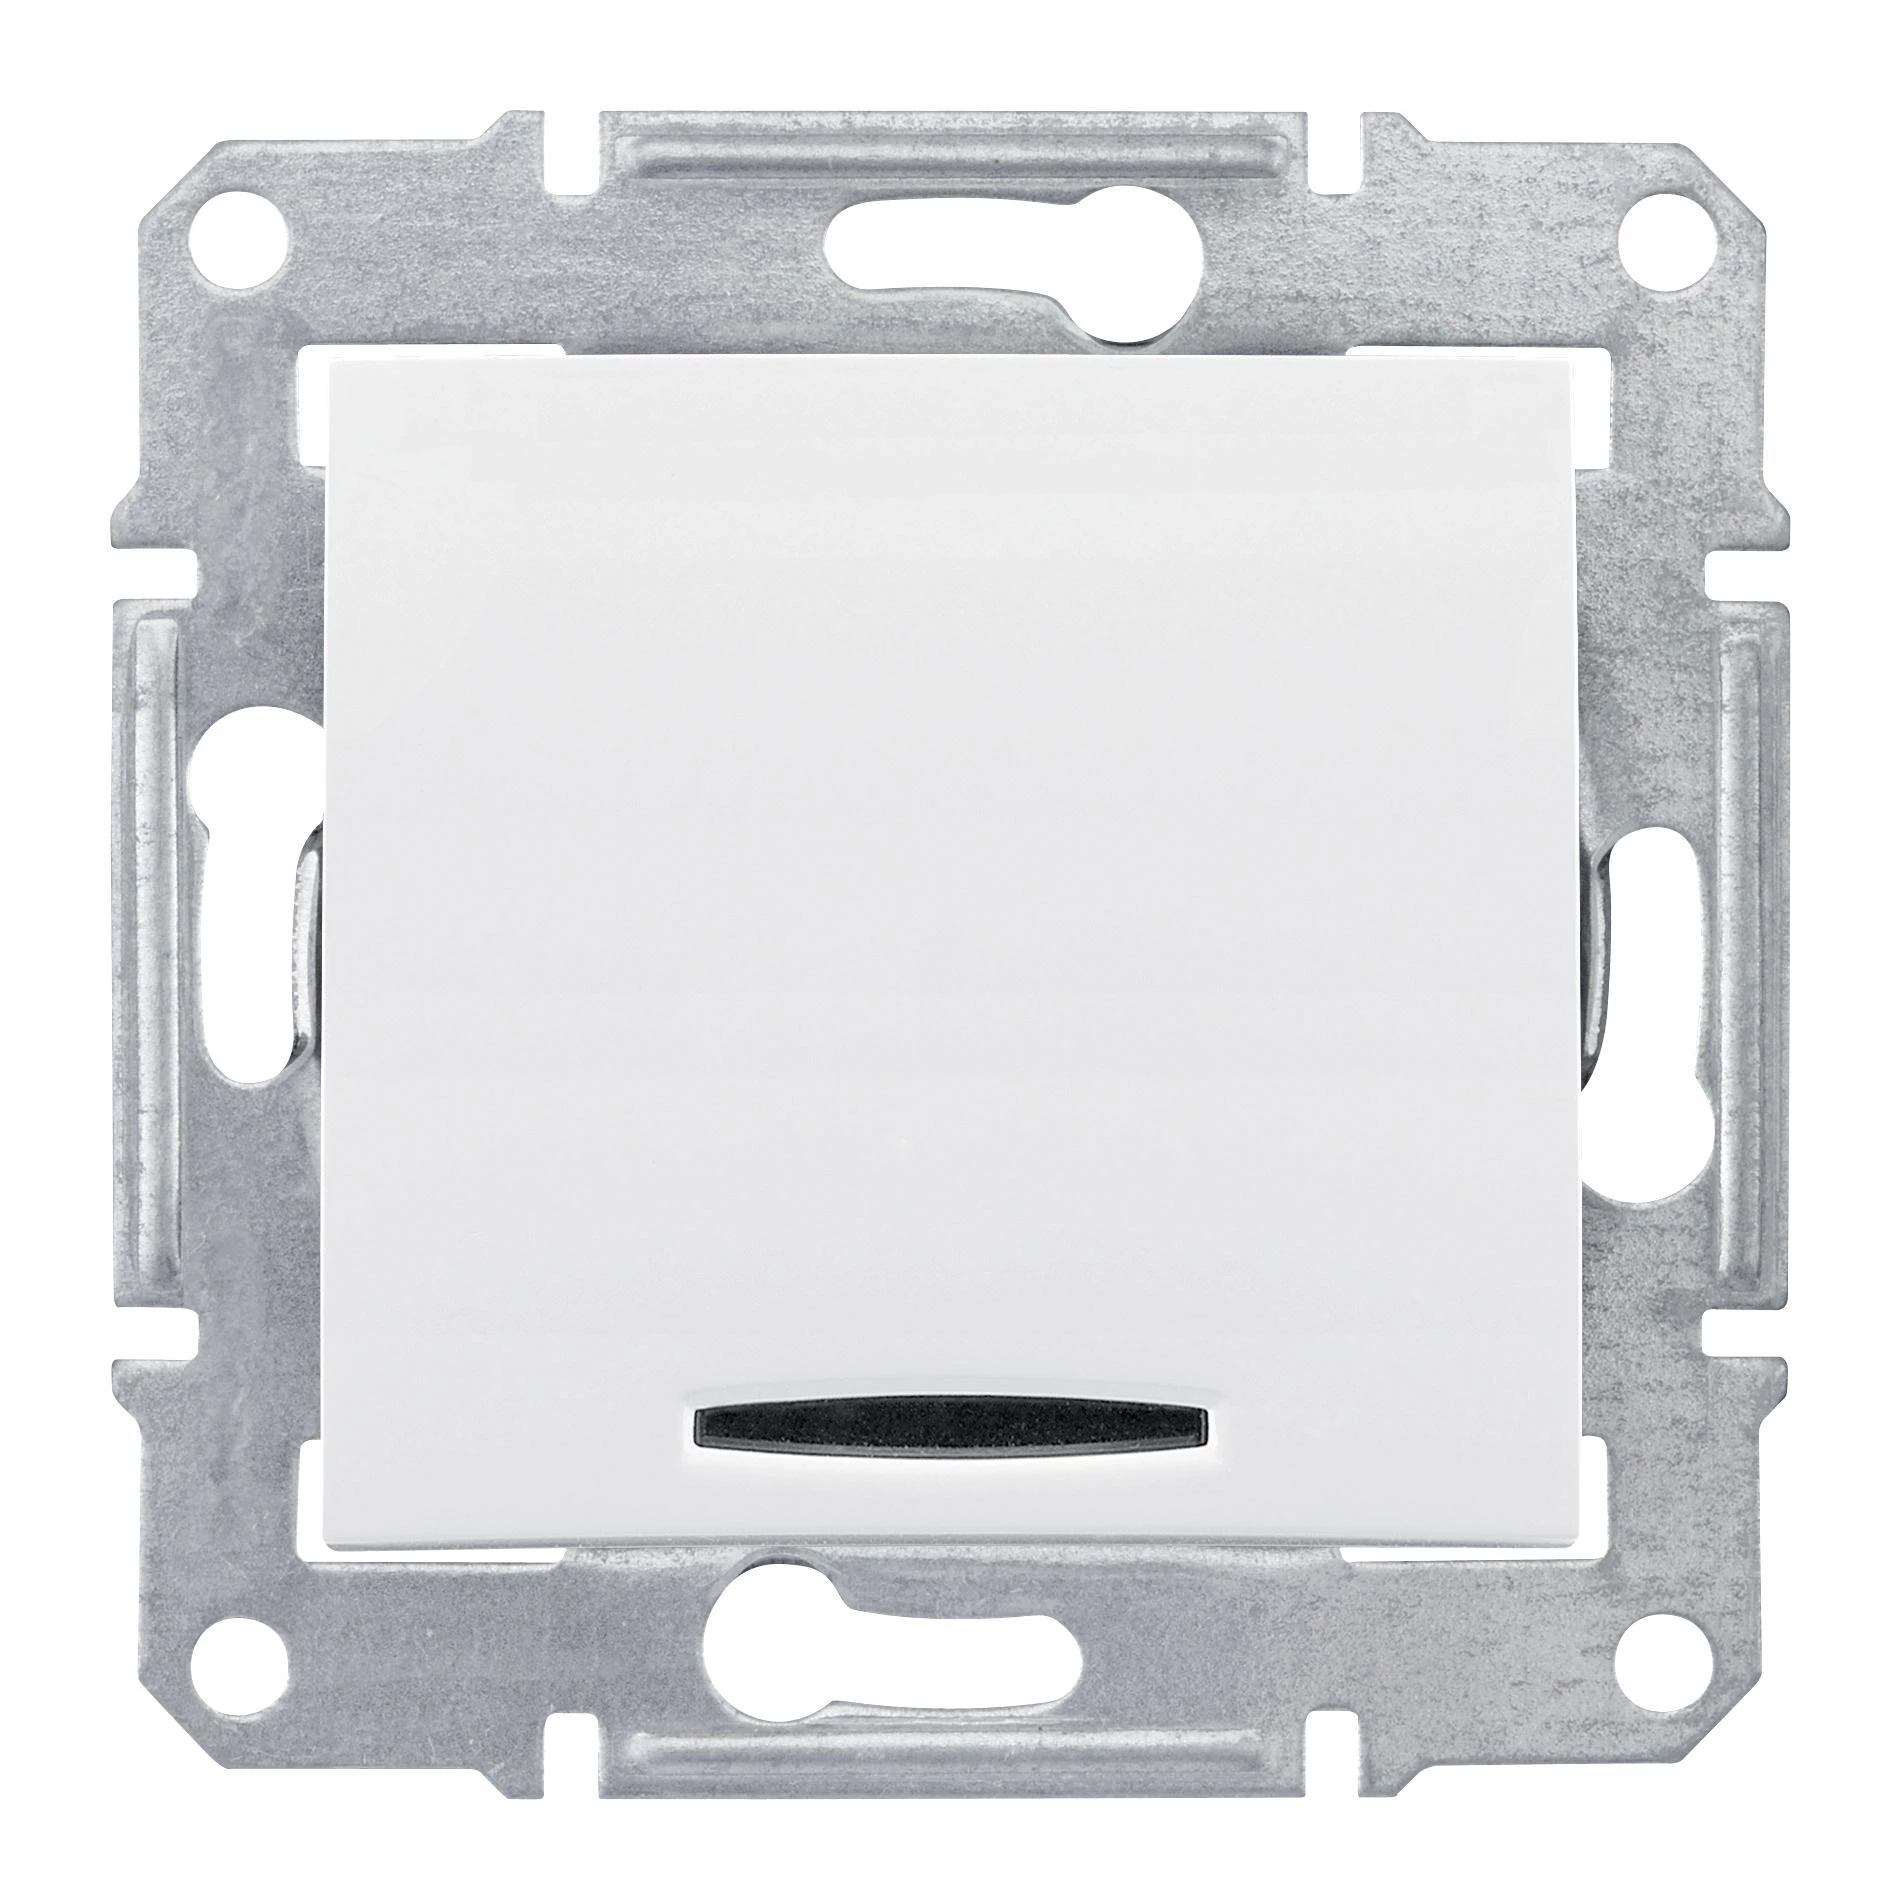  артикул SDN1600121 название Выключатель 1-кл. кнопочный с подсветкой , Белый, серия Sedna, Schneider Electric